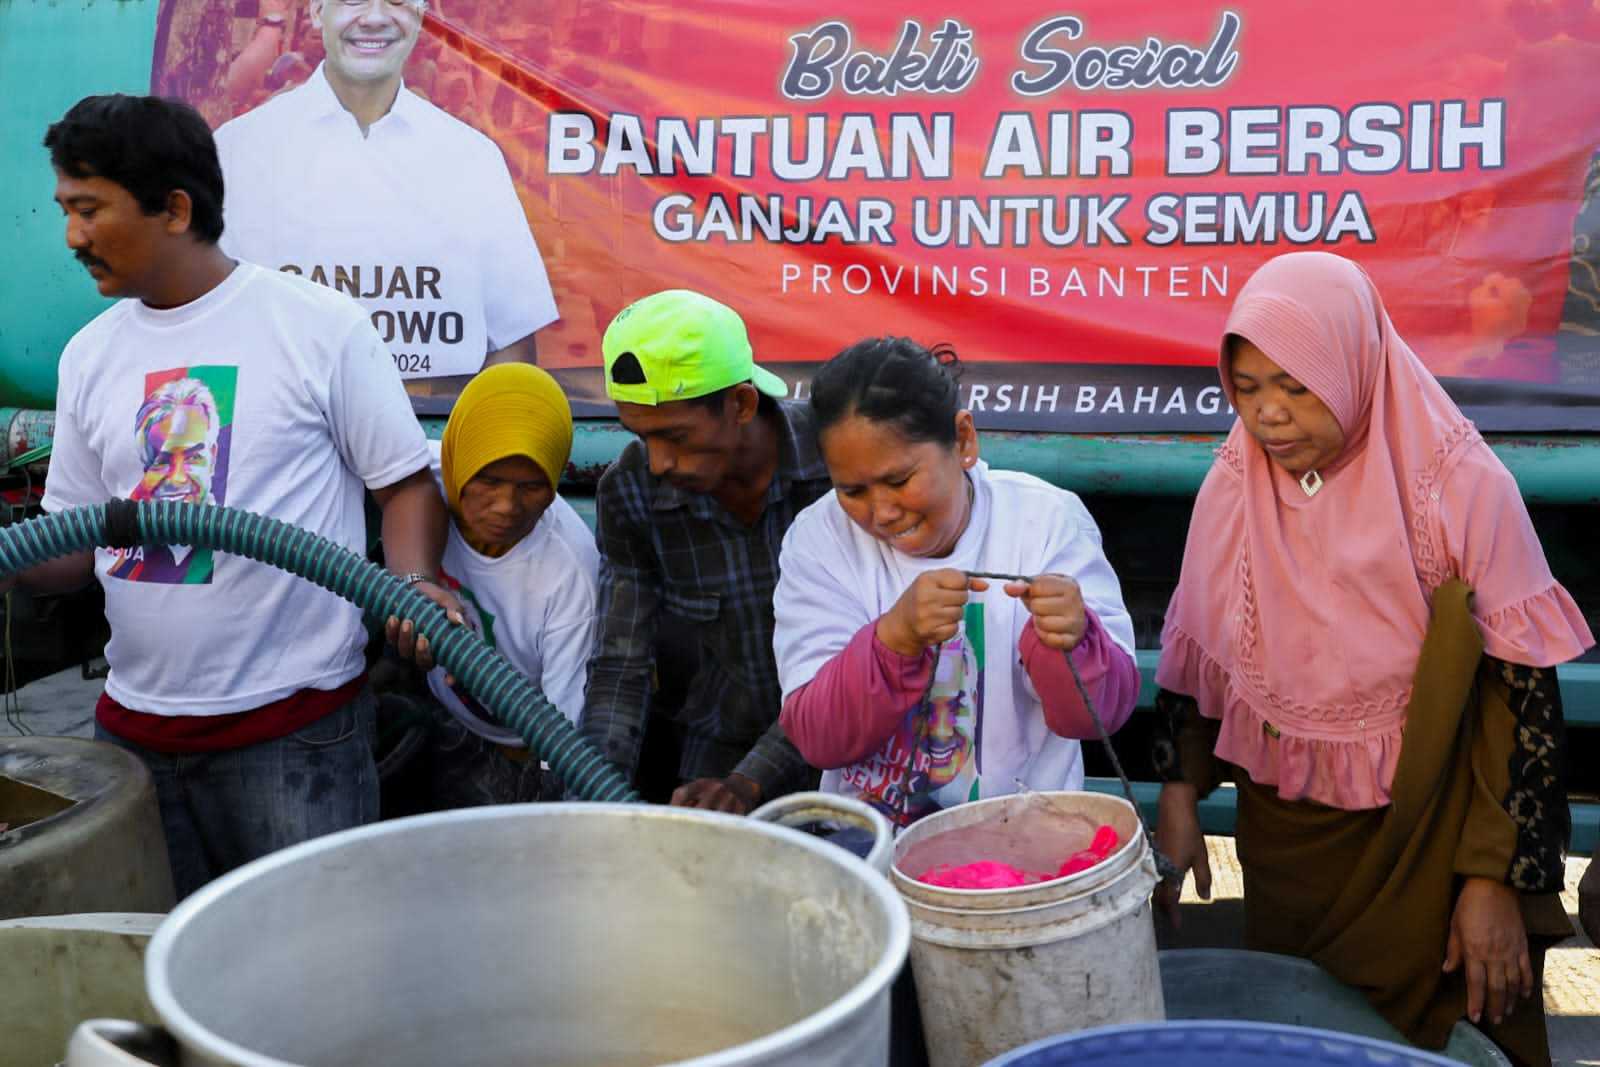 Air Bersih dari Relawan Ganjar untuk Semua Bantu 3 Ribu Keluarga di Kabupaten Serang Hadapi Krisis Air 1